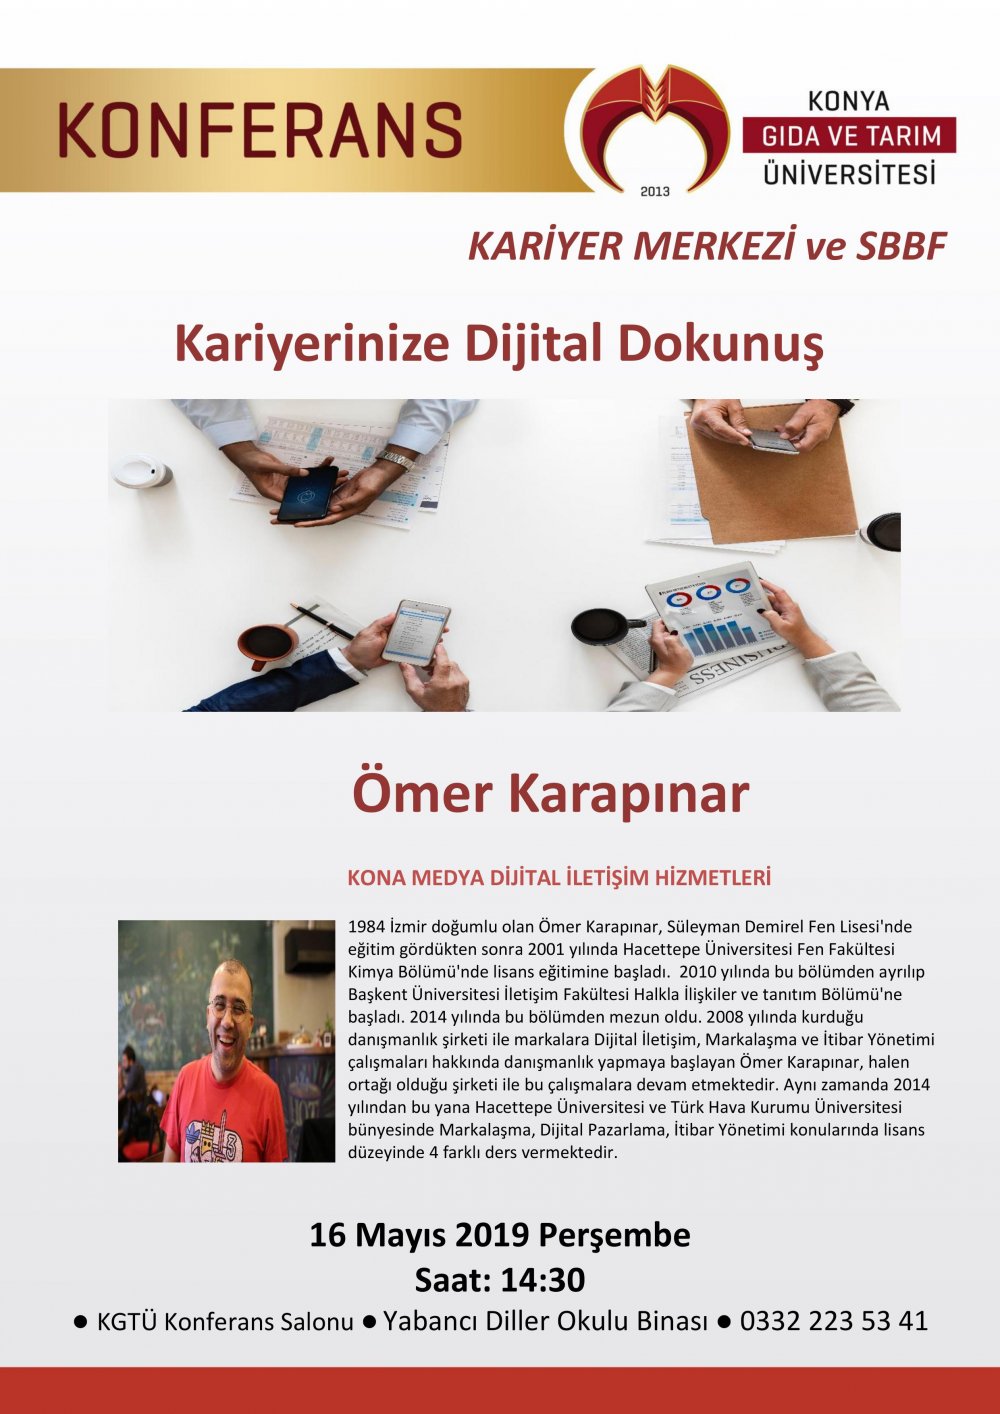 Konferans - Kariyerinize Dijital Dokunuş / 16 Mayıs 2019 Perşembe 14:30